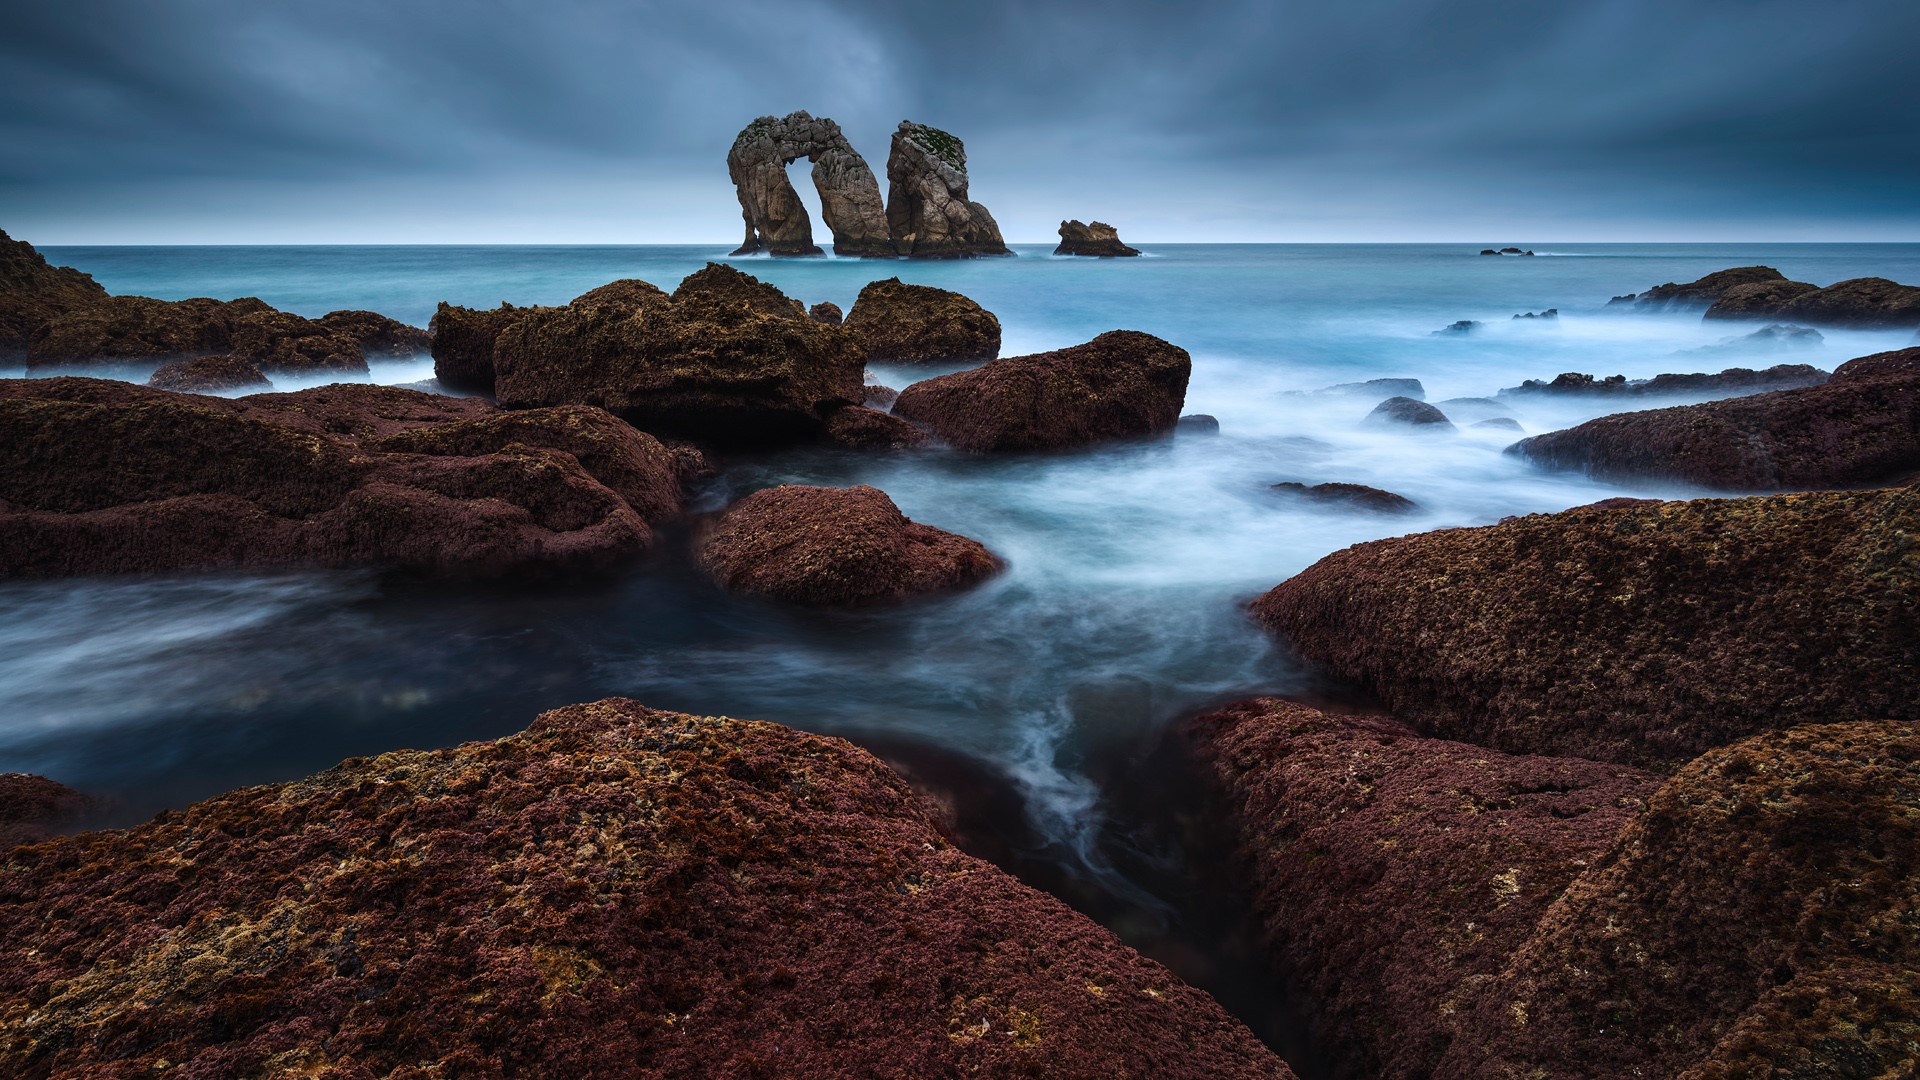 Urro del Manzano Rock near Liencres, Pielagos, Cantabria, Spain. Windows 10 Spotlight Image